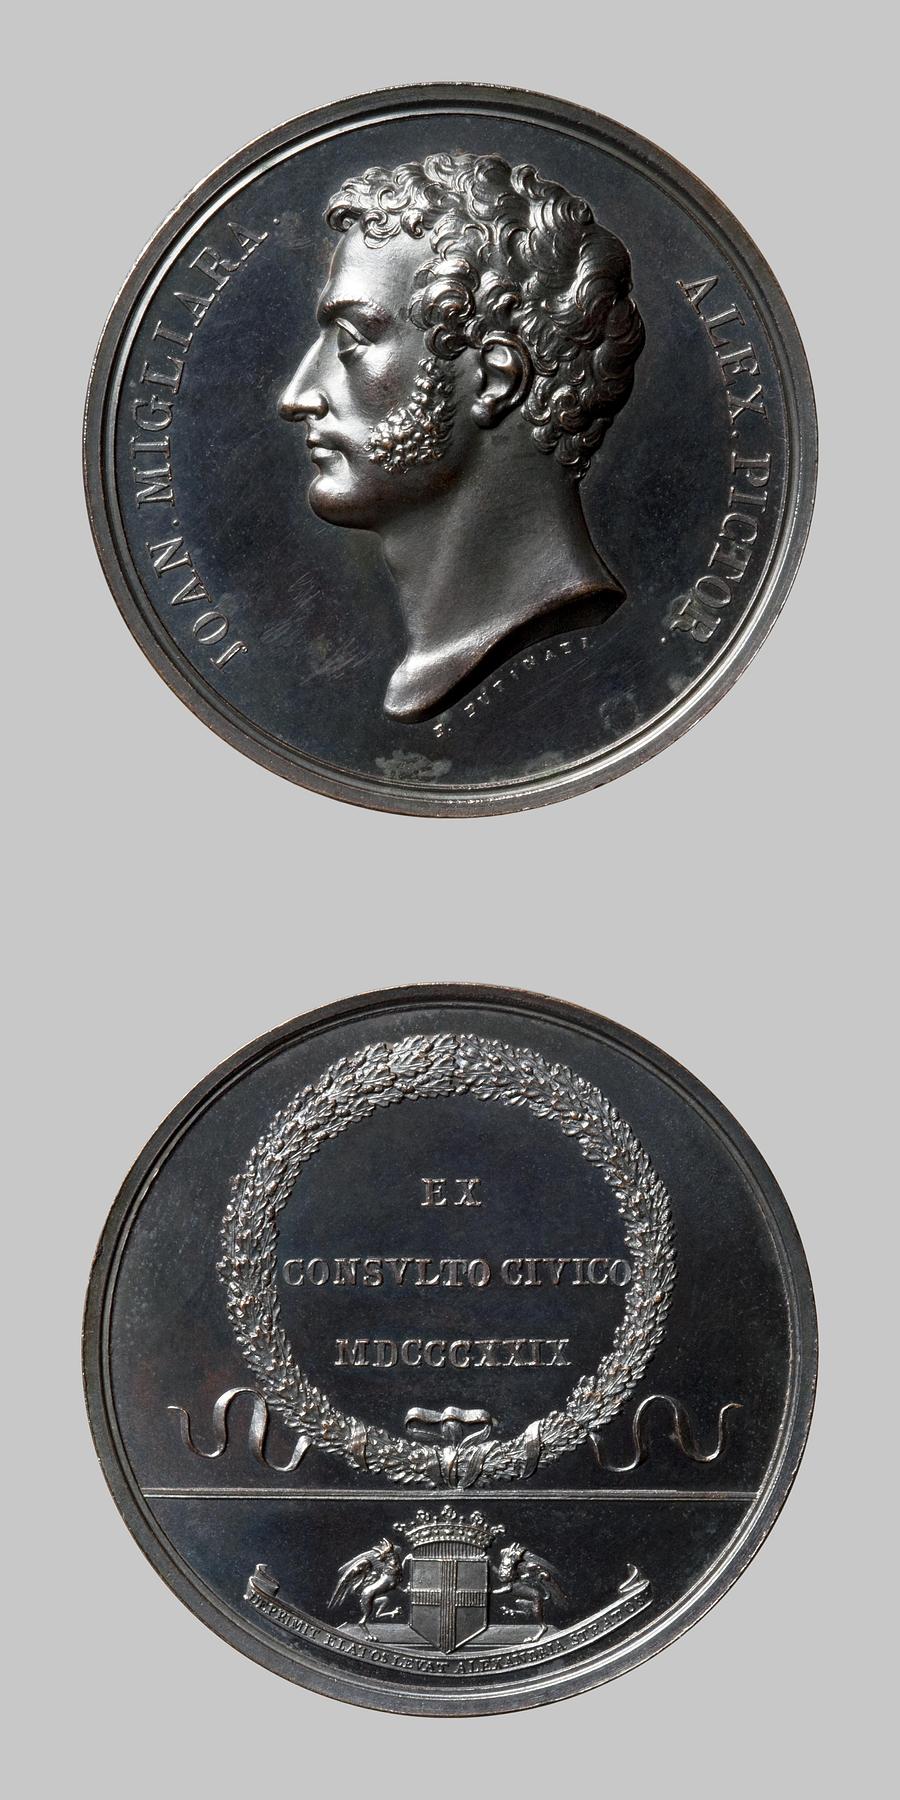 Medaljens forside: Arkitekturmaleren Giovanni Migliara. Medaljens bagside: Egekrans og våbenskjold, F112